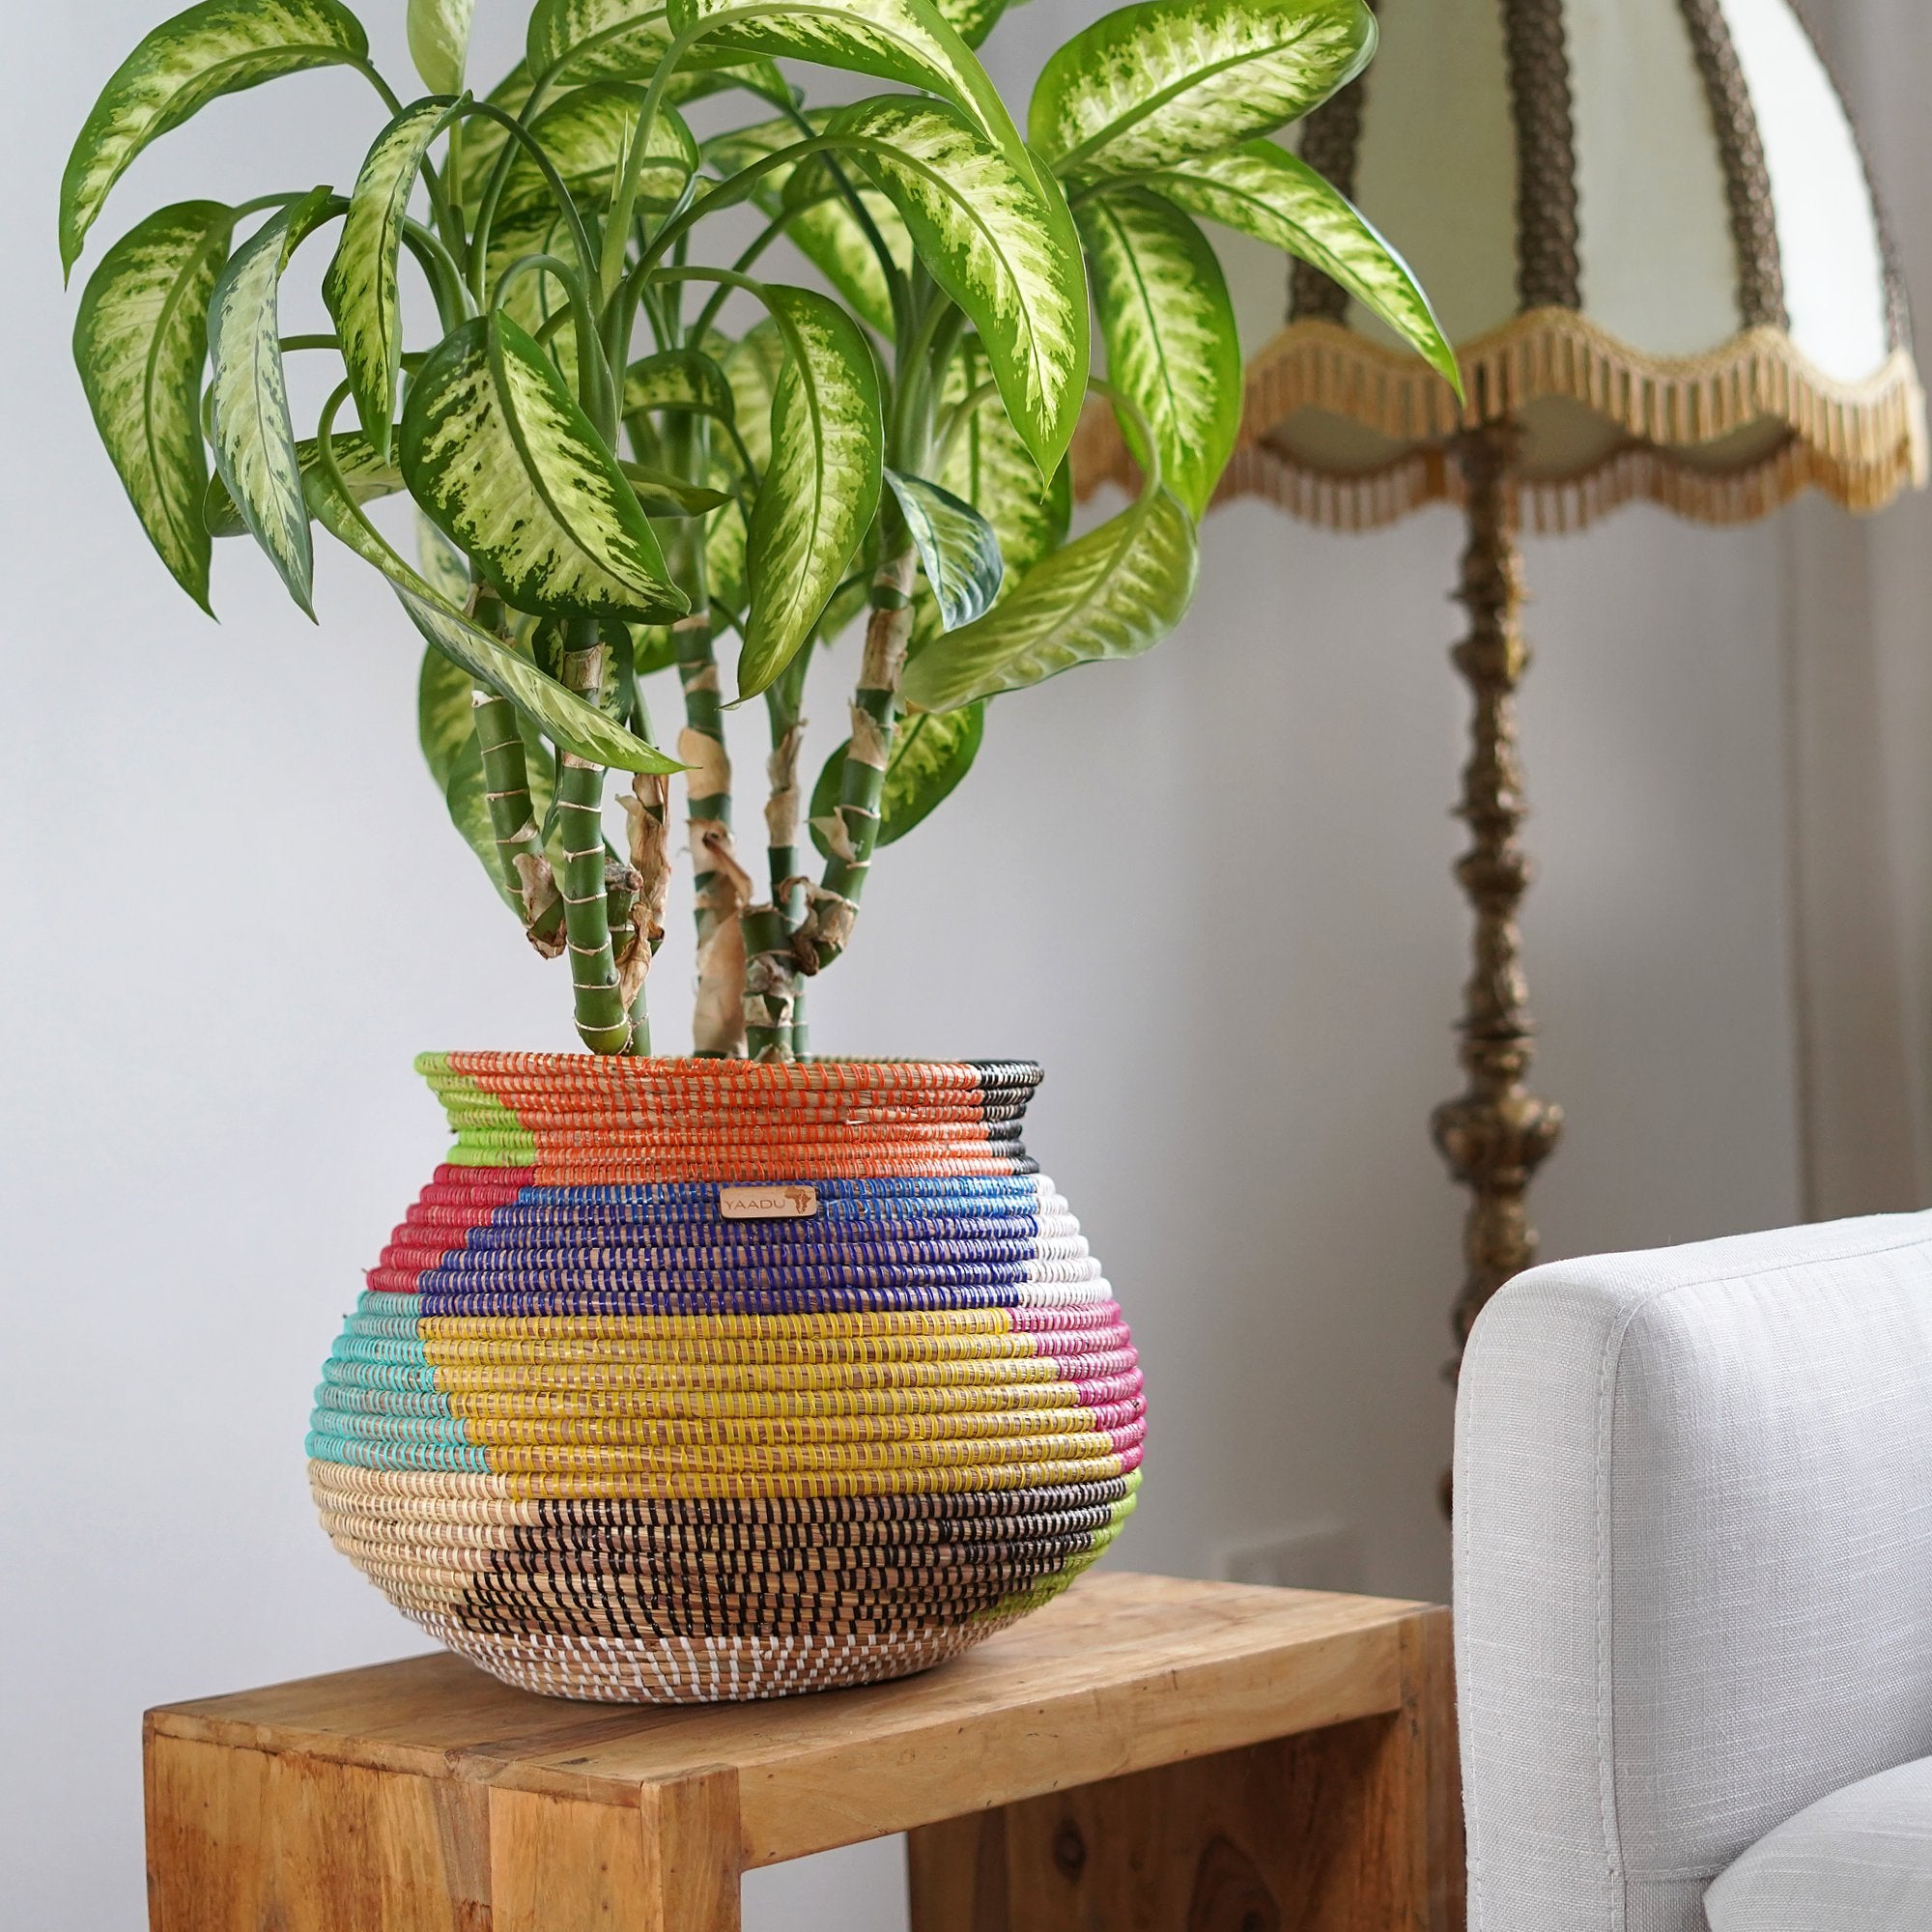 Large African Plant Basket – Amina